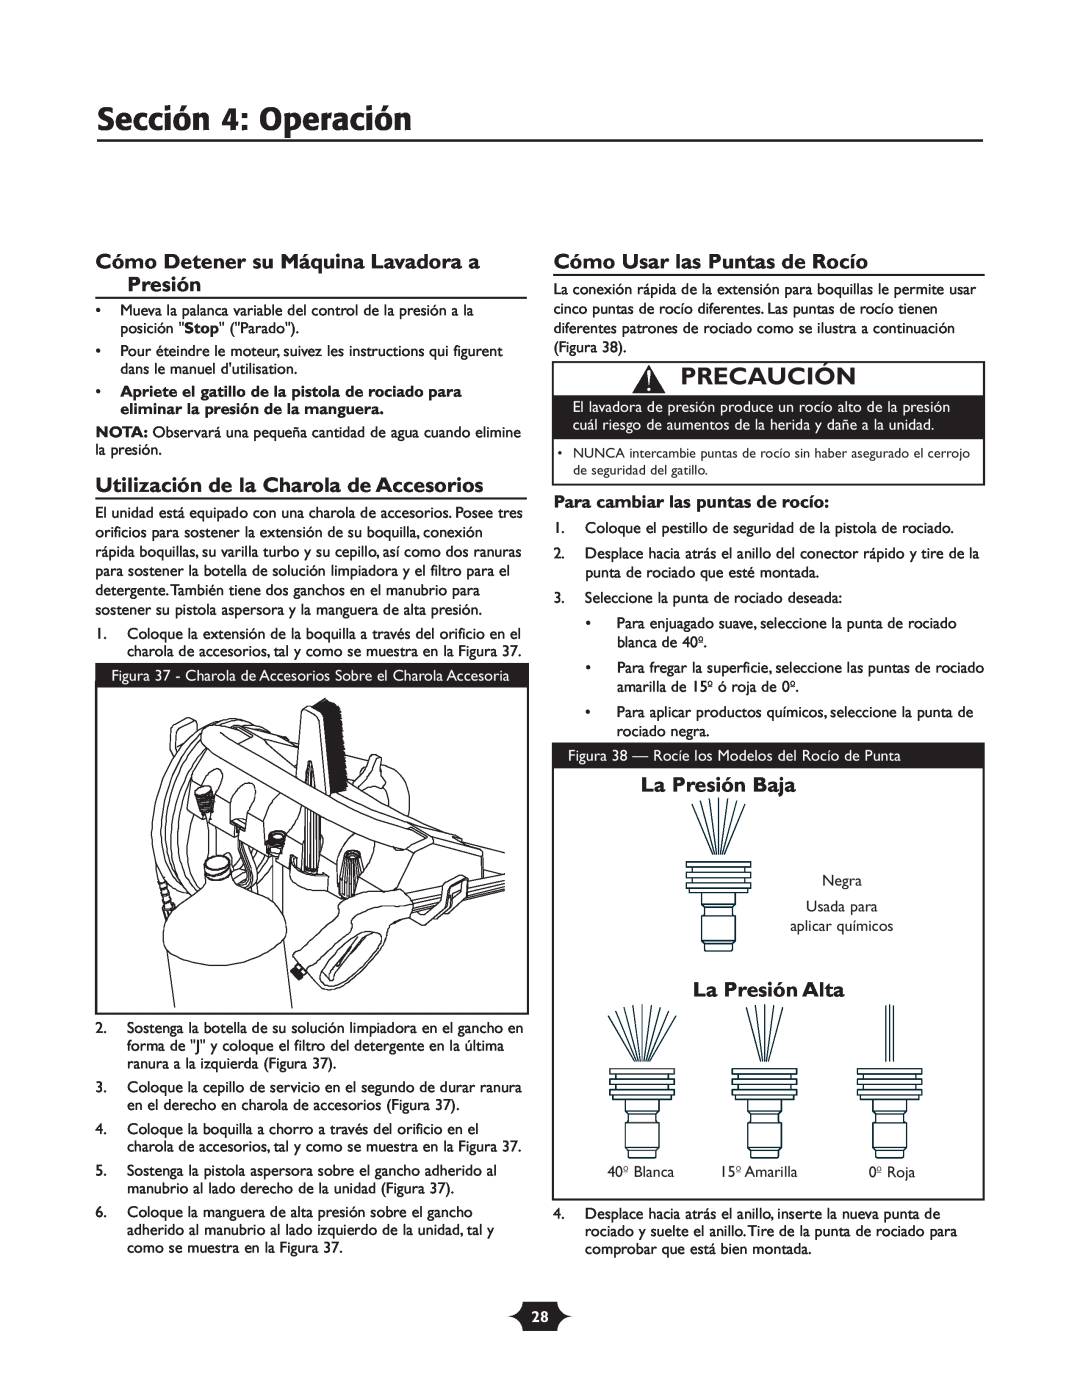 Briggs & Stratton 20209 Sección 4 Operación, Cómo Detener su Máquina Lavadora a Presión, Cómo Usar las Puntas de Rocío 